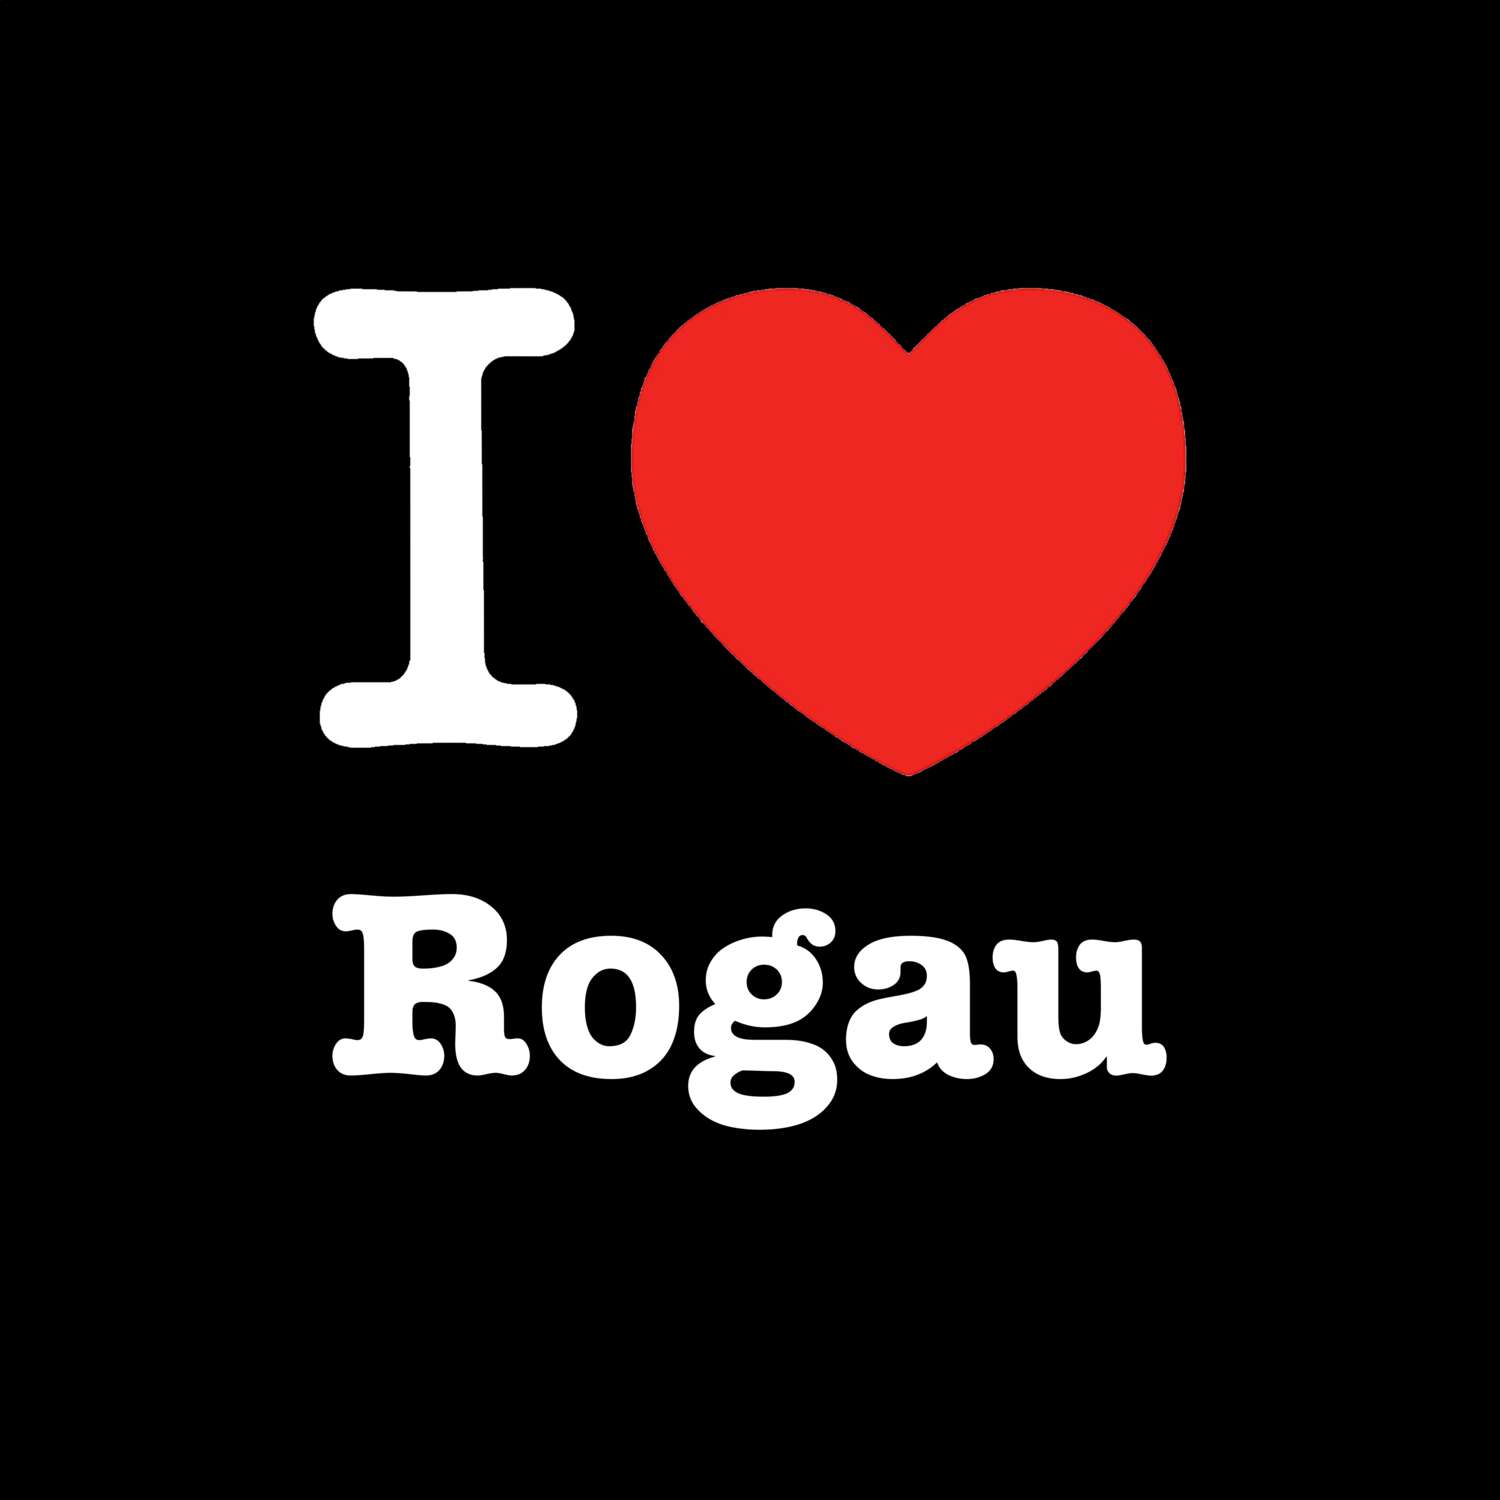 Rogau T-Shirt »I love«